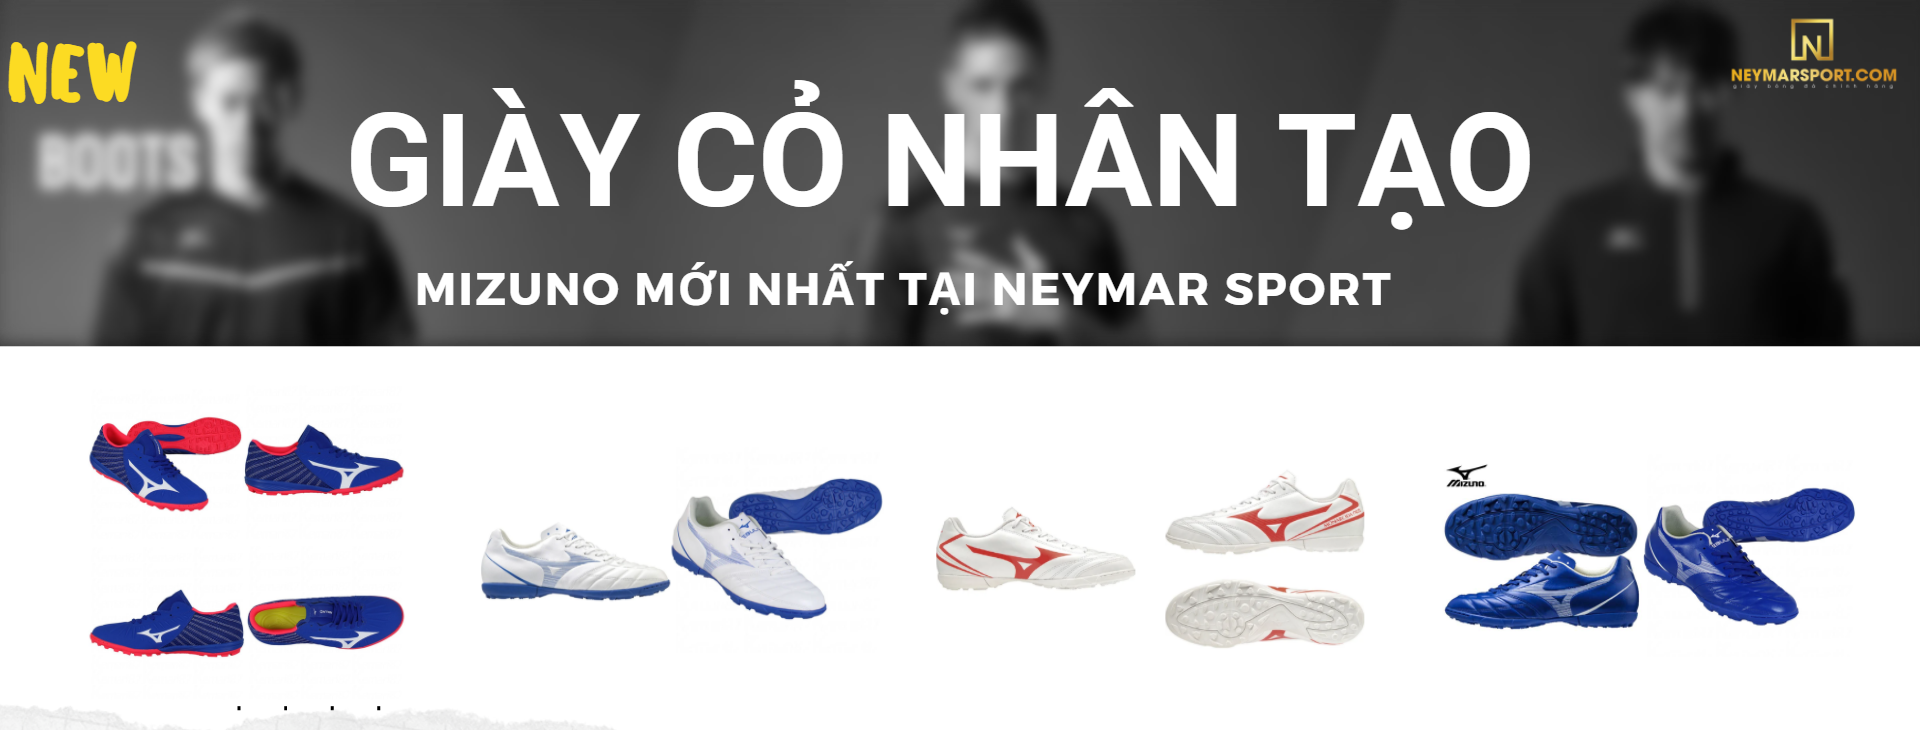 Giới thiệu những mẫu giày cỏ nhân tạo mới của Mizuno vừa cập bến tại Neymarsport T9/2020